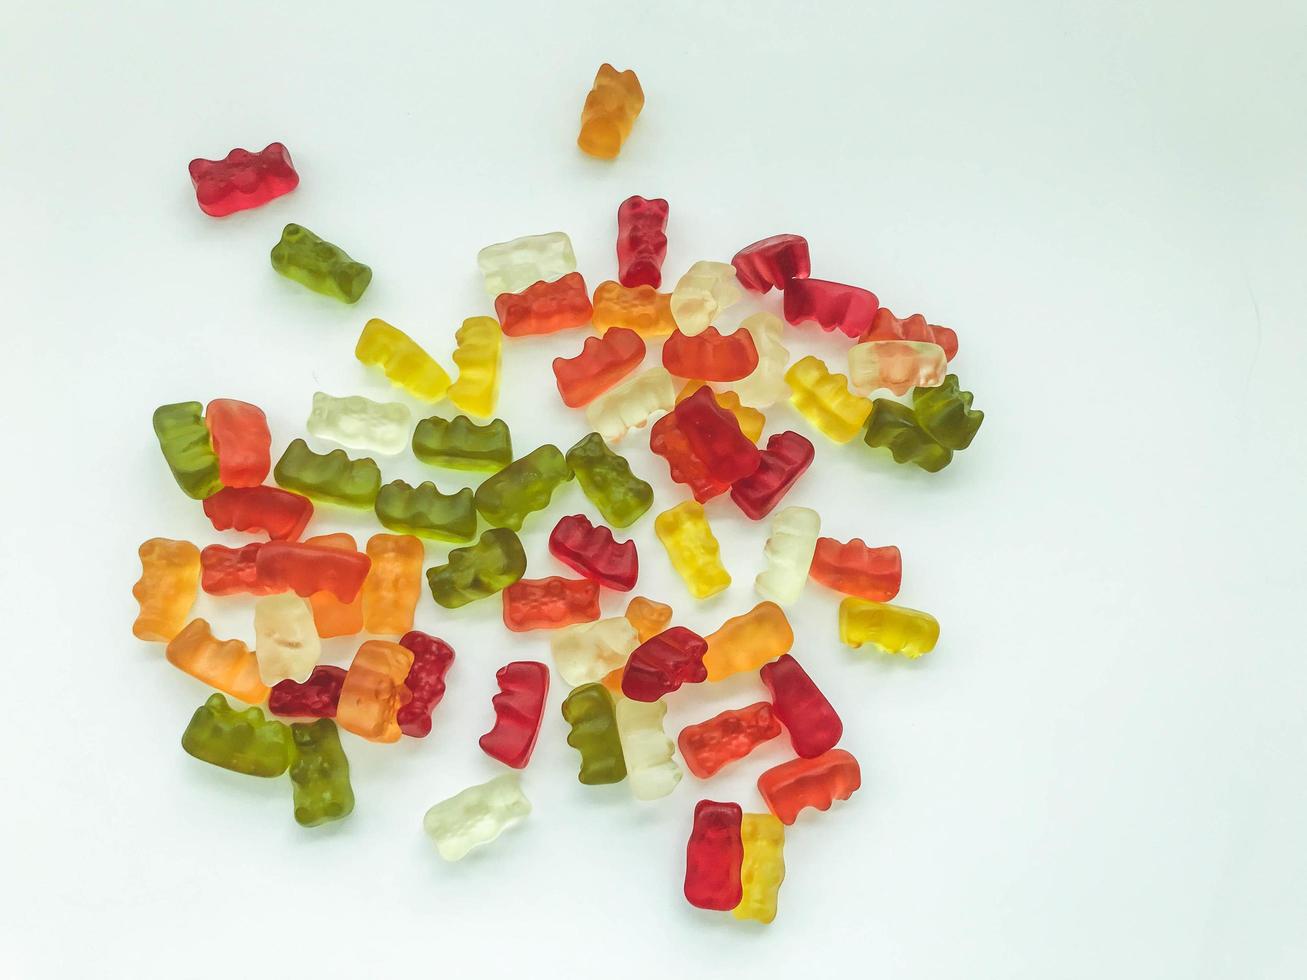 Gummibärchen in verschiedenen Farben liegen auf einem mattweißen Hintergrund. köstliche Vielfalt an Süßigkeiten. gallertartige Gummis erwünscht. köstliche Bären, essbares süßes Dessert foto